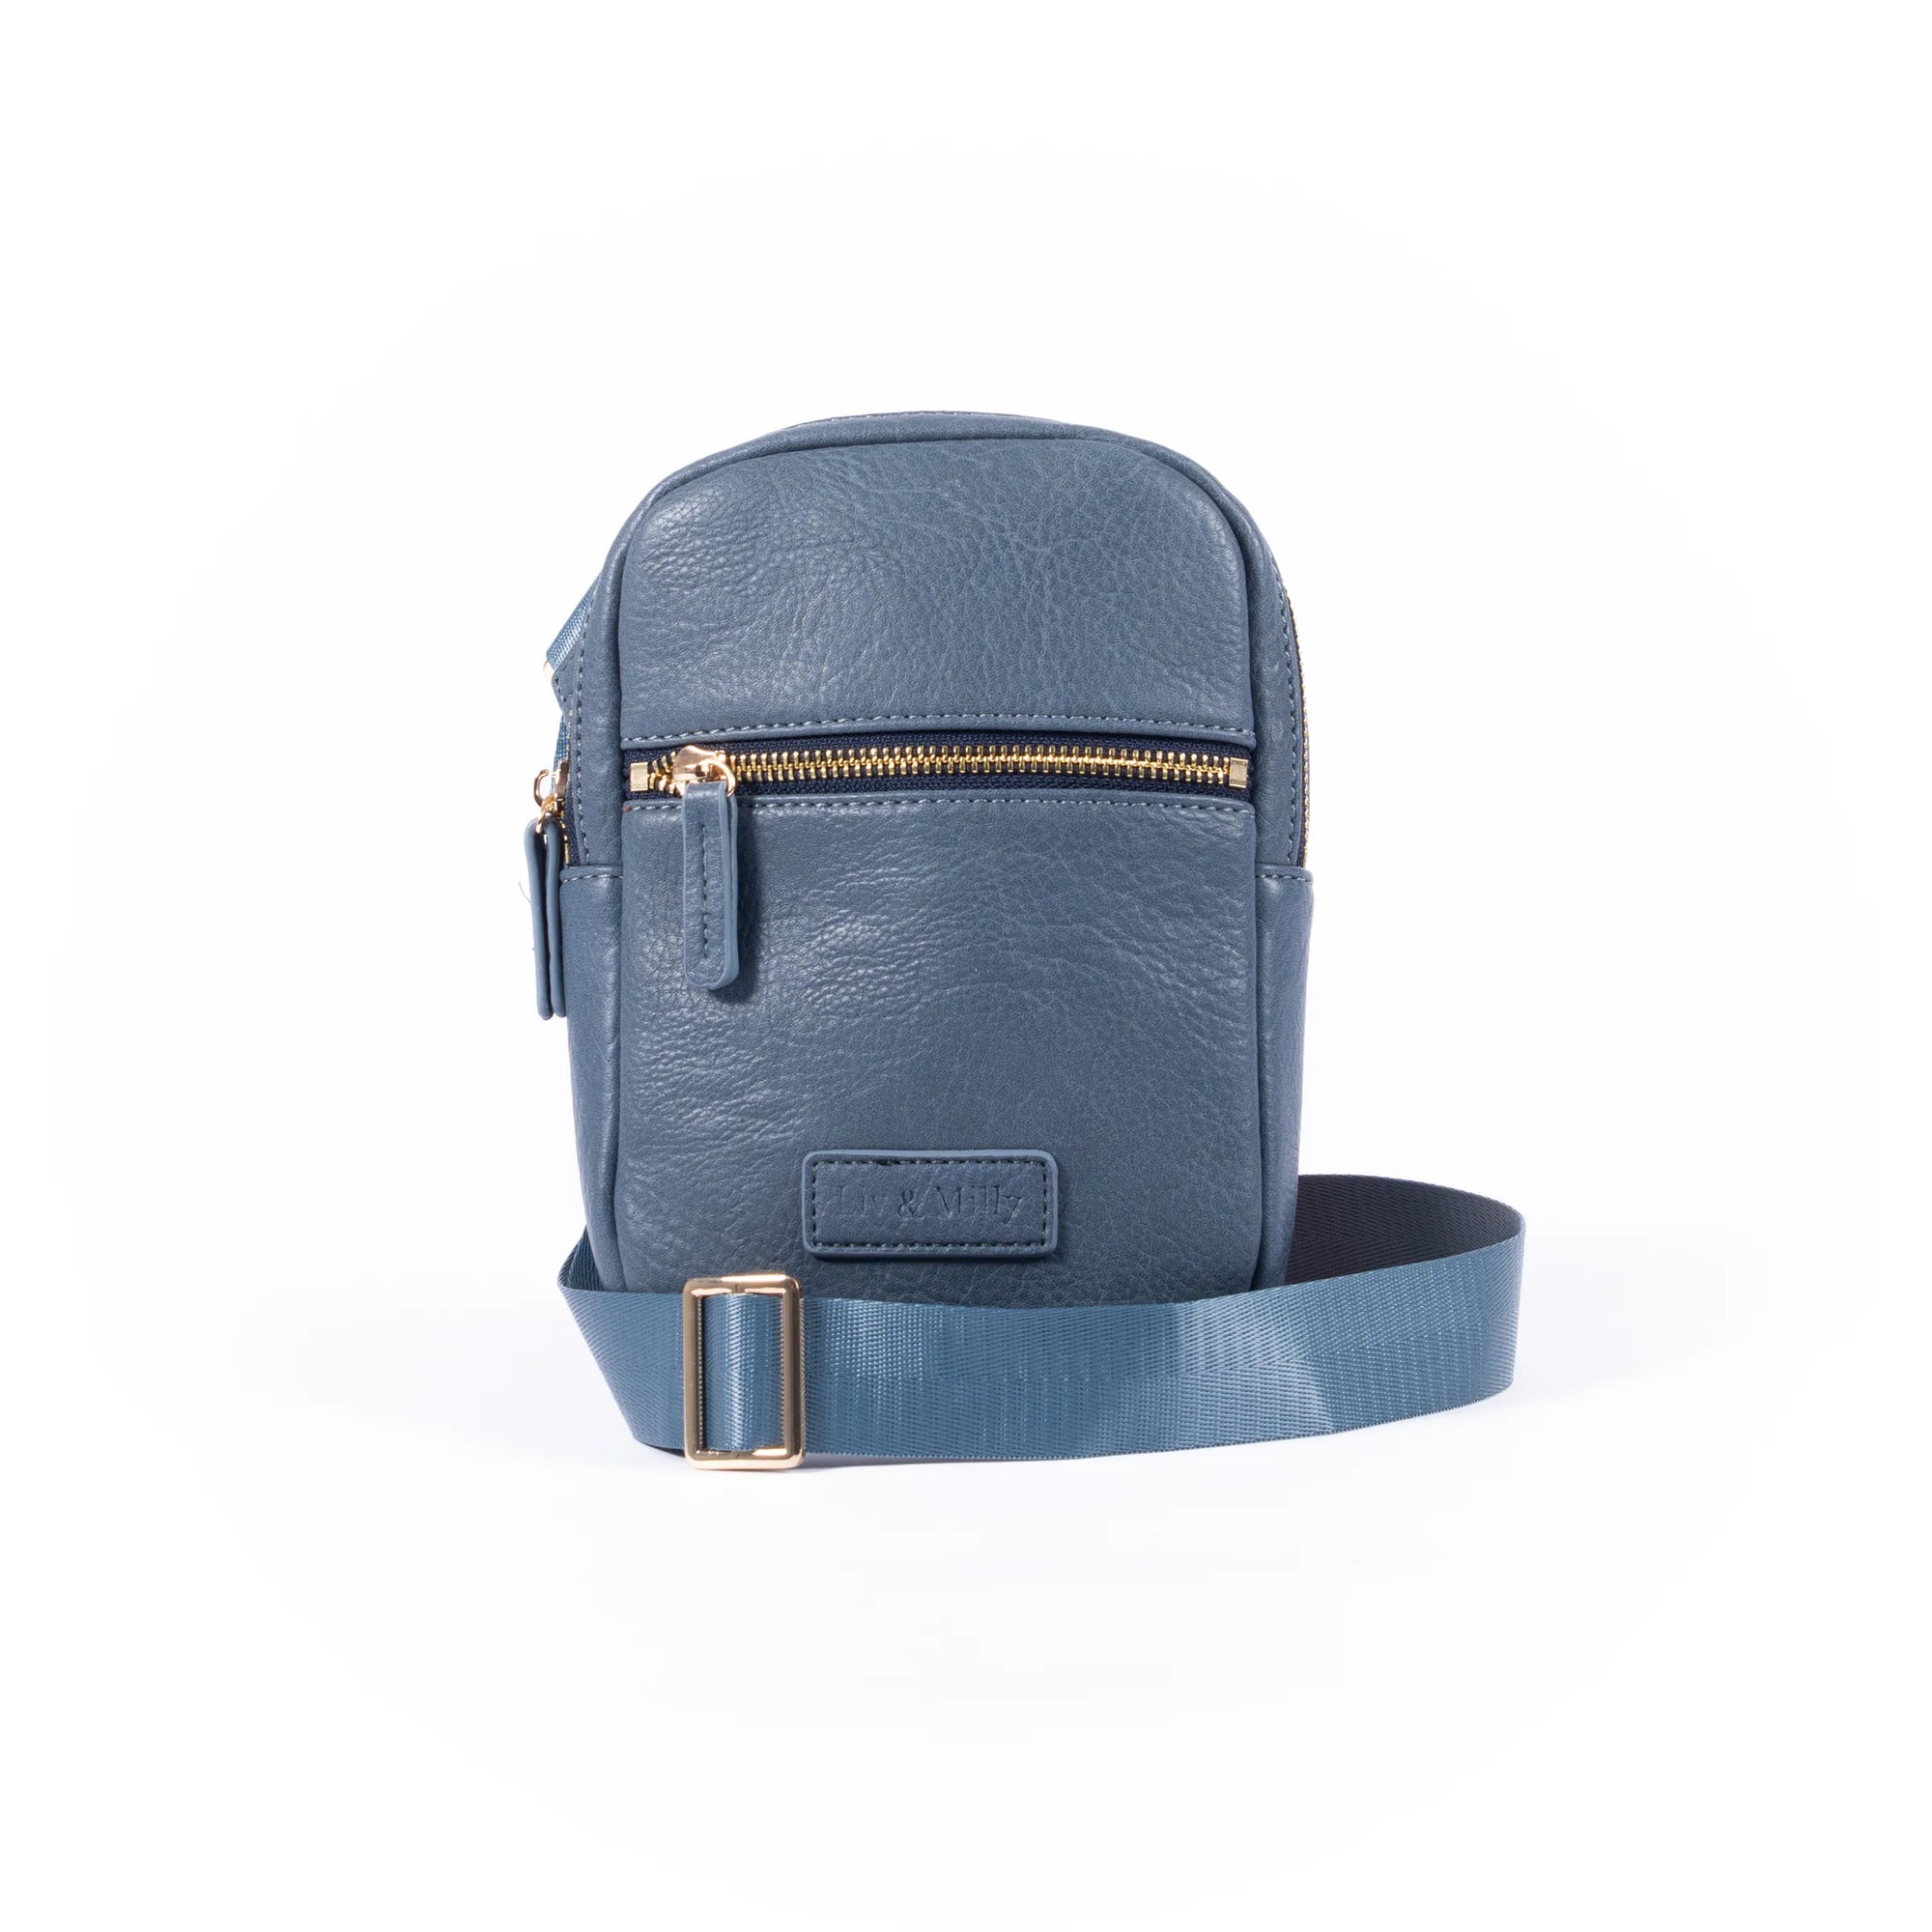 Mill & Hide - Liv & Milly - Brooklyn Bag - Elemental Blue